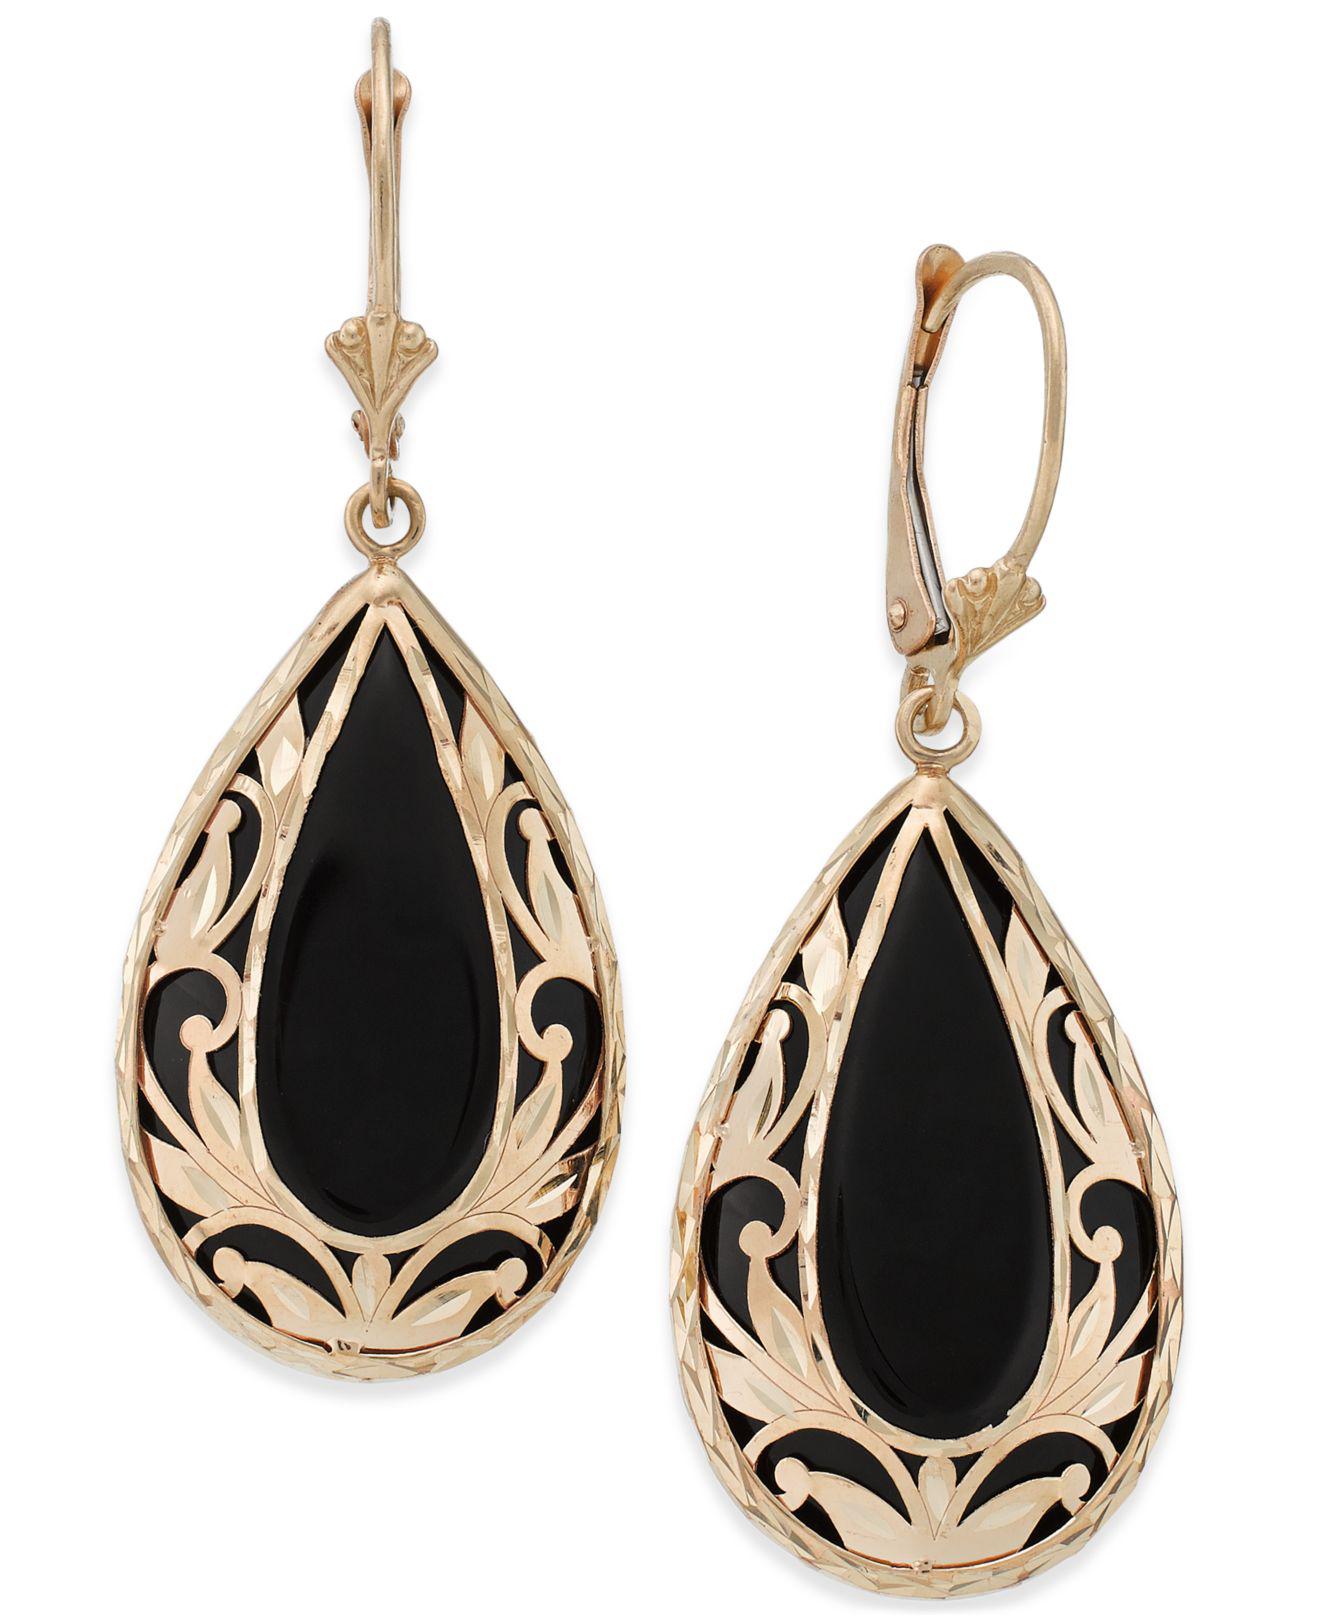 Lyst Macys Onyx Teardrop Decorative Framed Drop Earrings In 14k Gold In Black